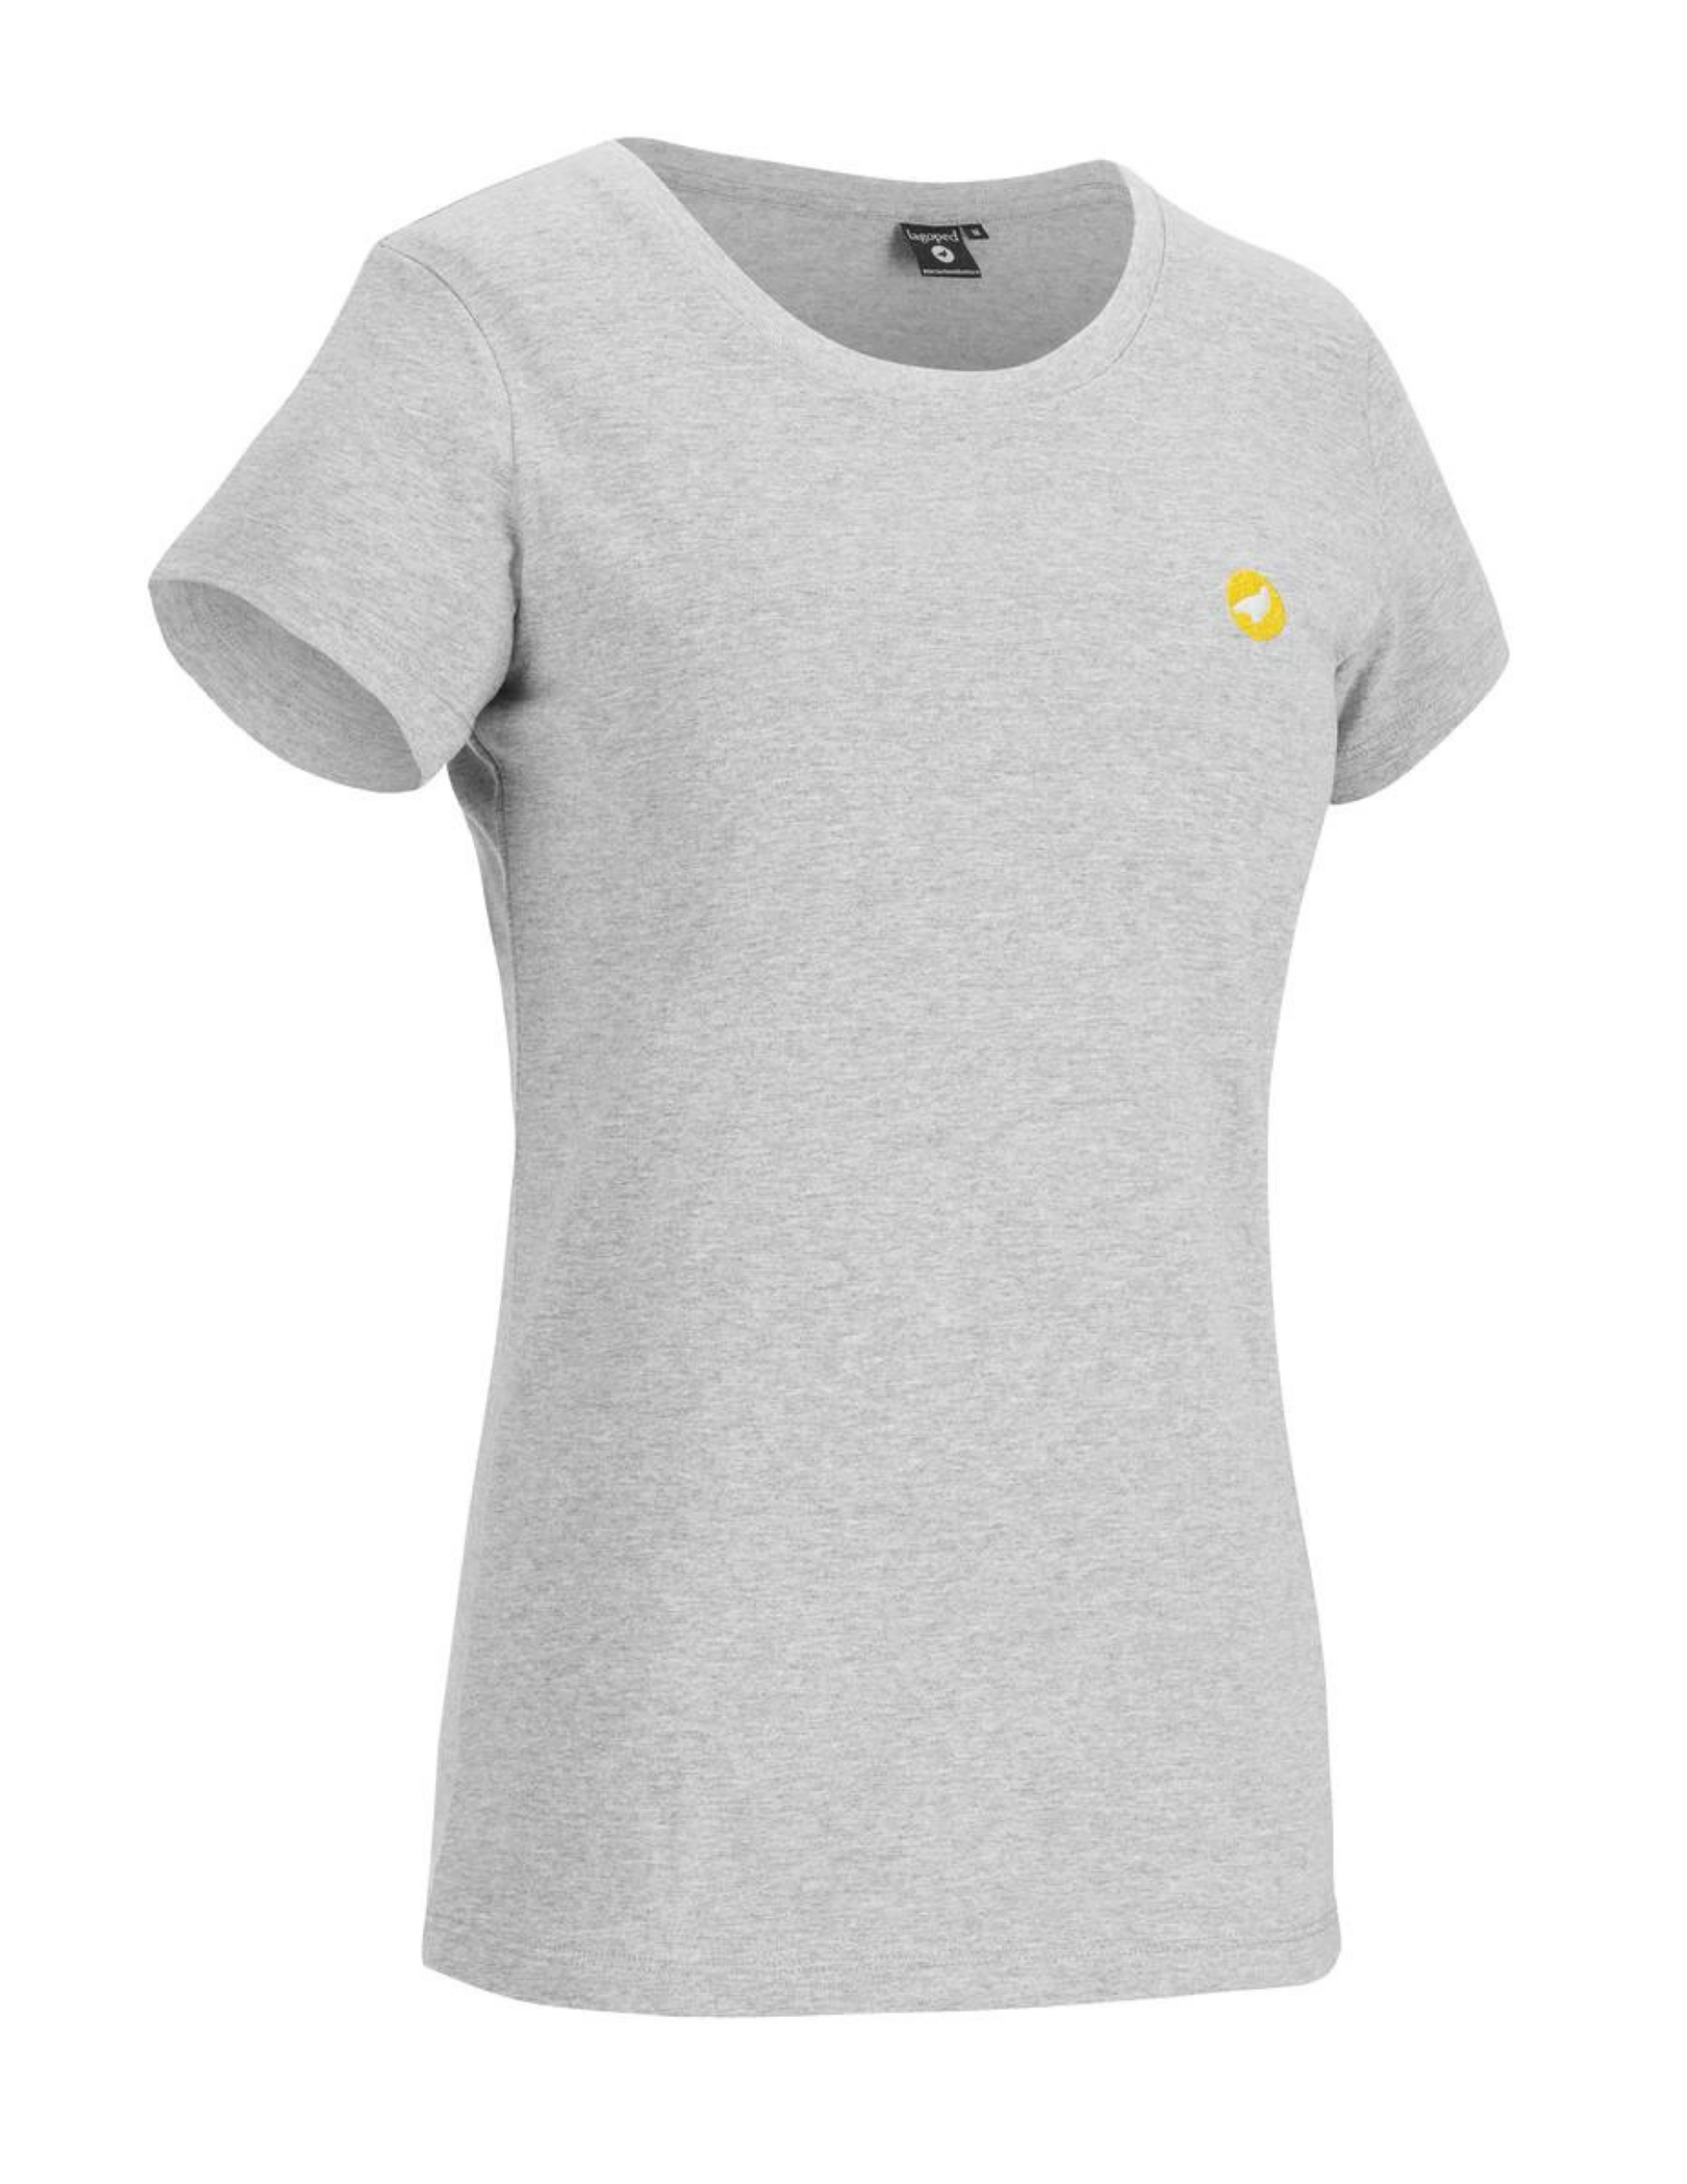 T-Shirt pour femme Teerrec Vallee avec broderie Lagoped sur le coeur